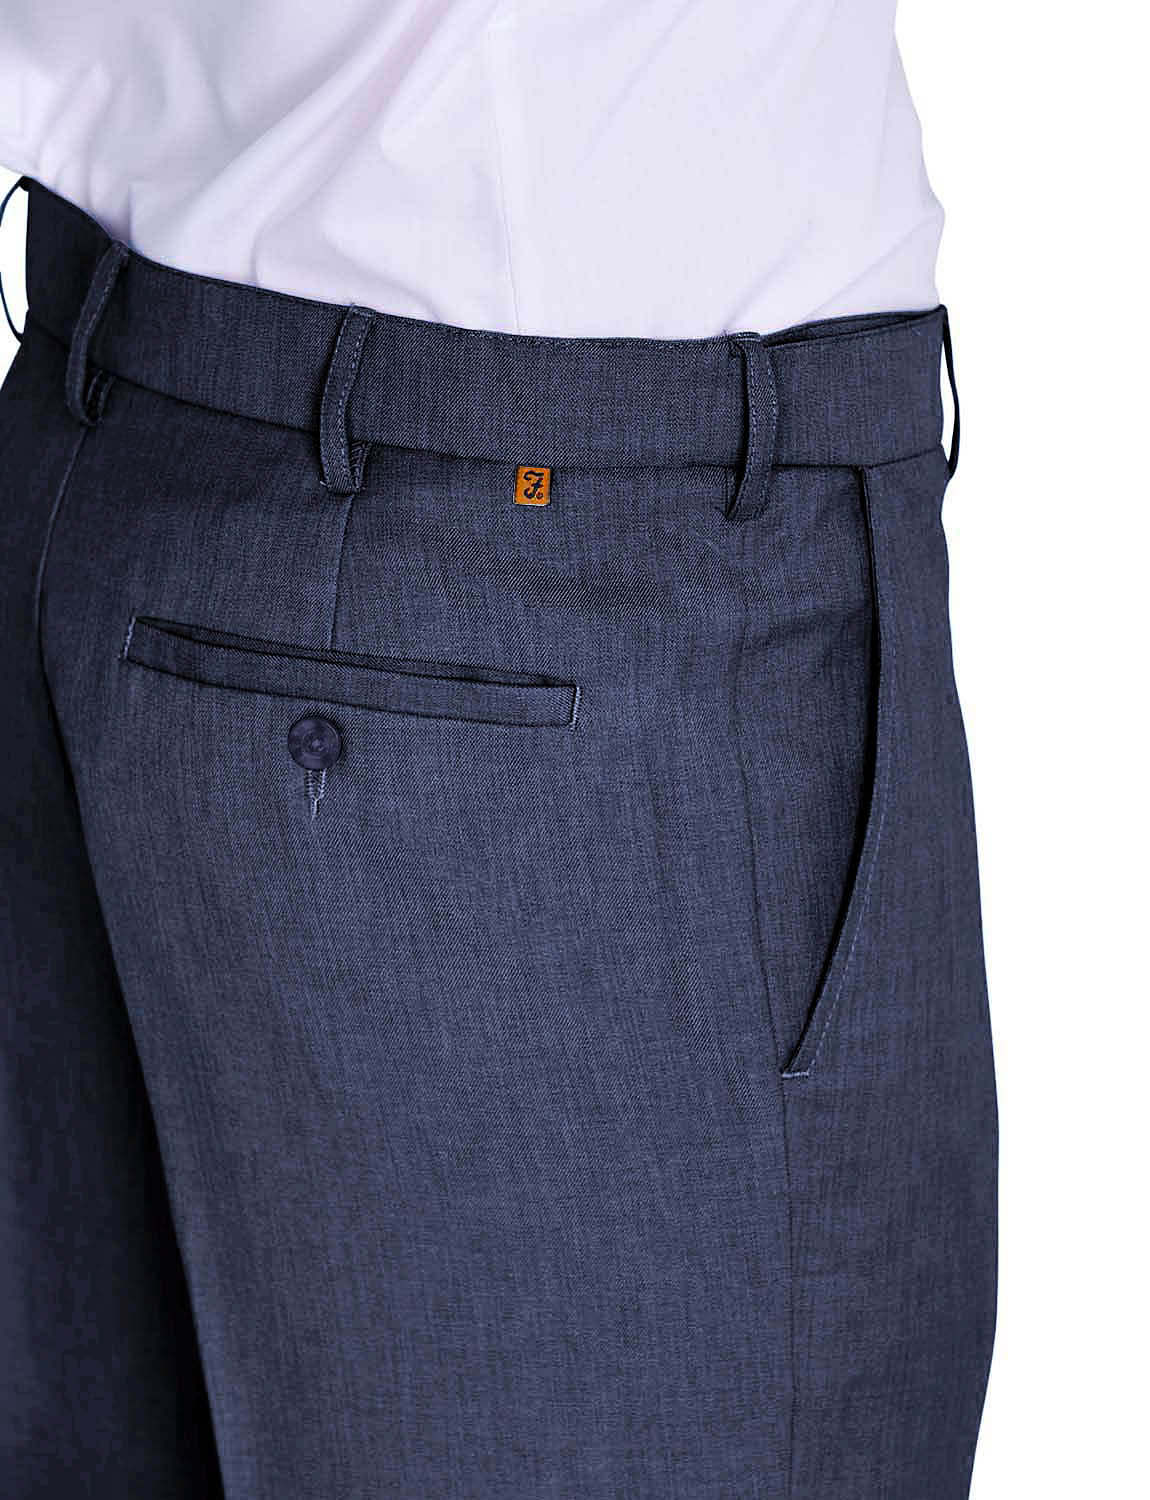 Farah Flex men's Trousers W36 L31 Regular fit Solid Brown Self-Adjusting  Waist | eBay